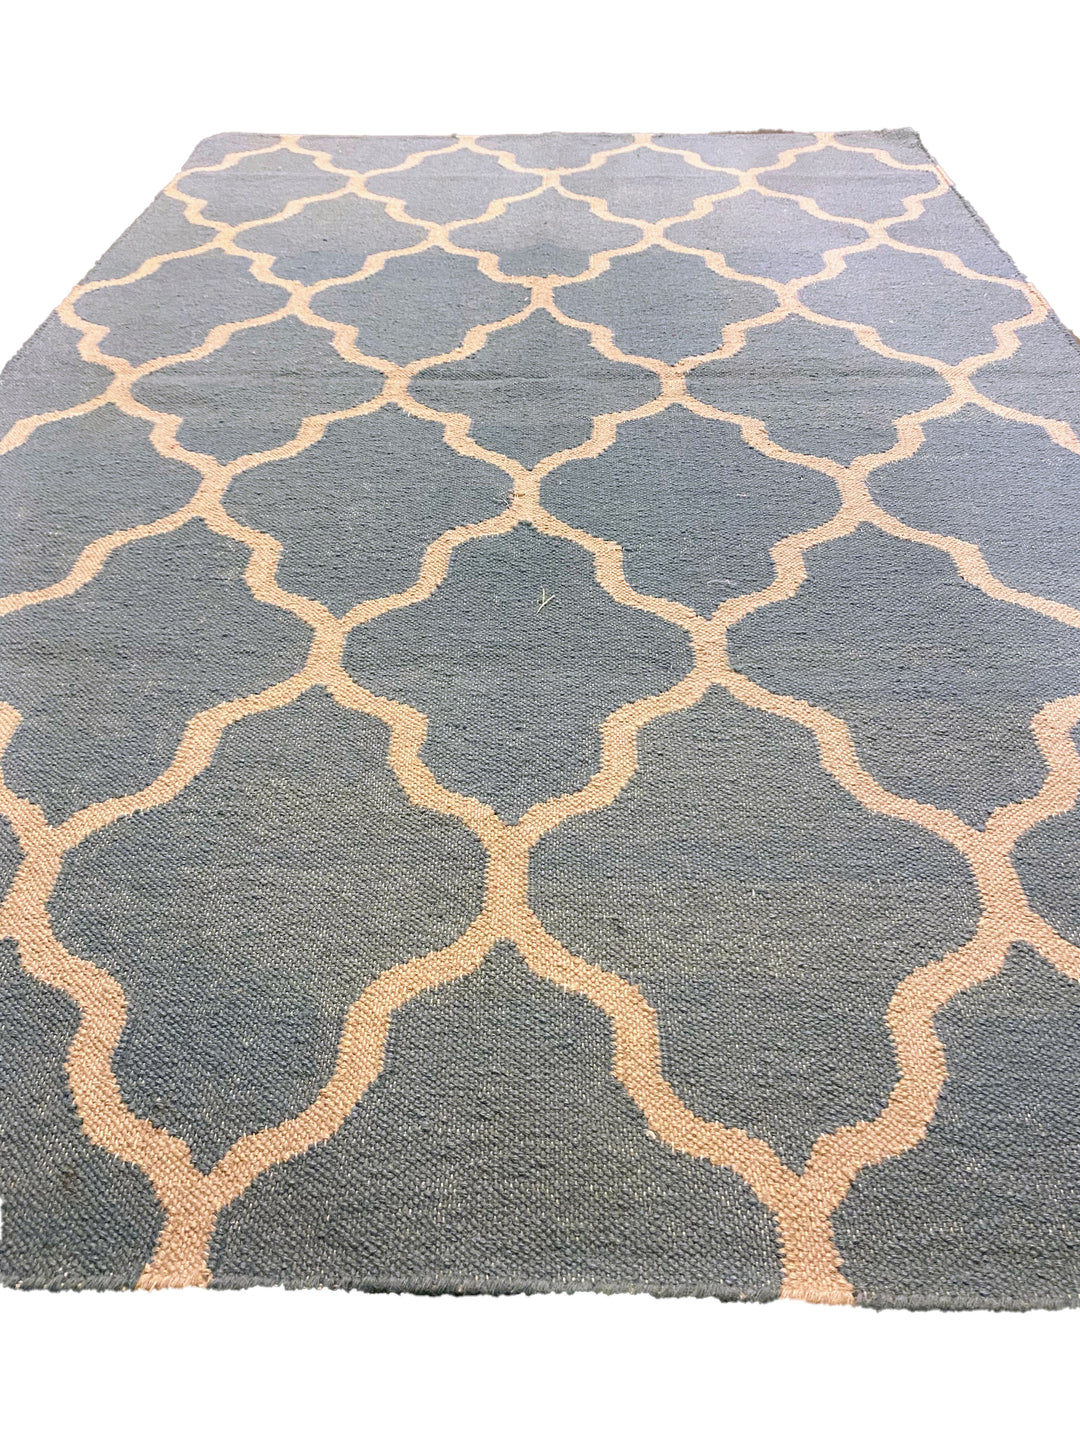 Perle - Size: 5.11 x 3.11 - Imam Carpet Co